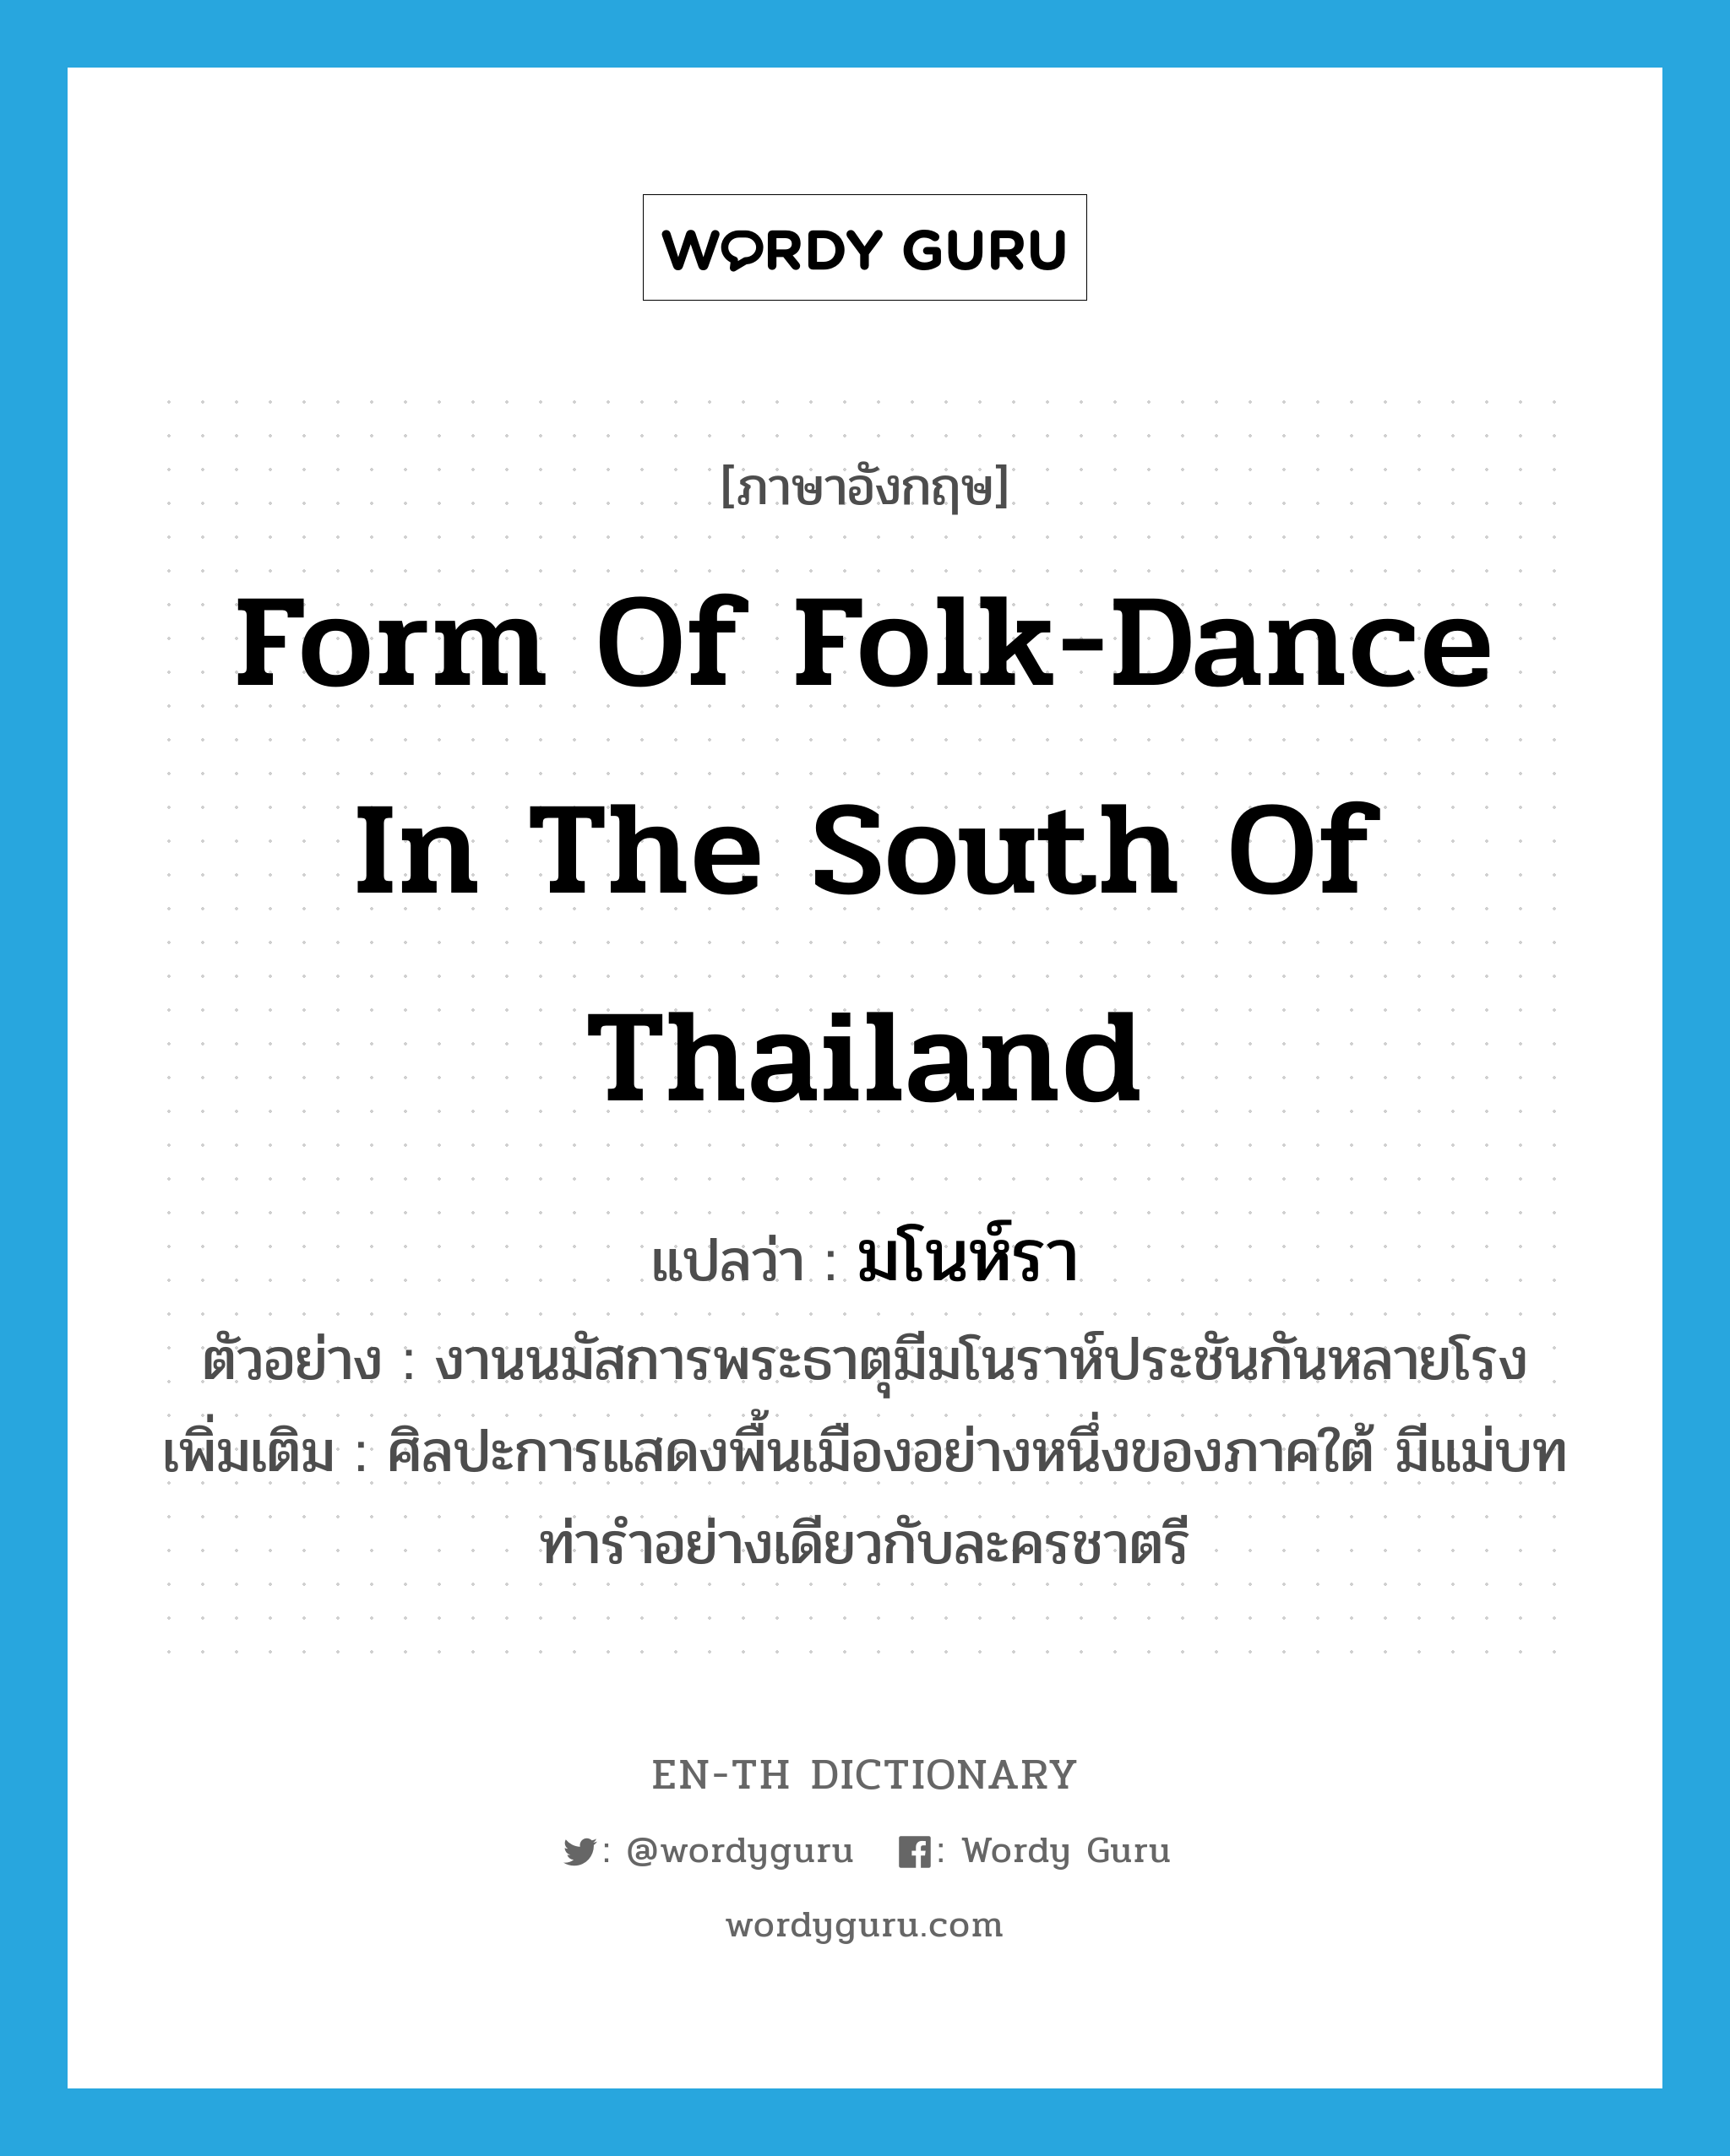 มโนห์รา ภาษาอังกฤษ?, คำศัพท์ภาษาอังกฤษ มโนห์รา แปลว่า form of folk-dance in the south of Thailand ประเภท N ตัวอย่าง งานนมัสการพระธาตุมีมโนราห์ประชันกันหลายโรง เพิ่มเติม ศิลปะการแสดงพื้นเมืองอย่างหนึ่งของภาคใต้ มีแม่บทท่ารำอย่างเดียวกับละครชาตรี หมวด N